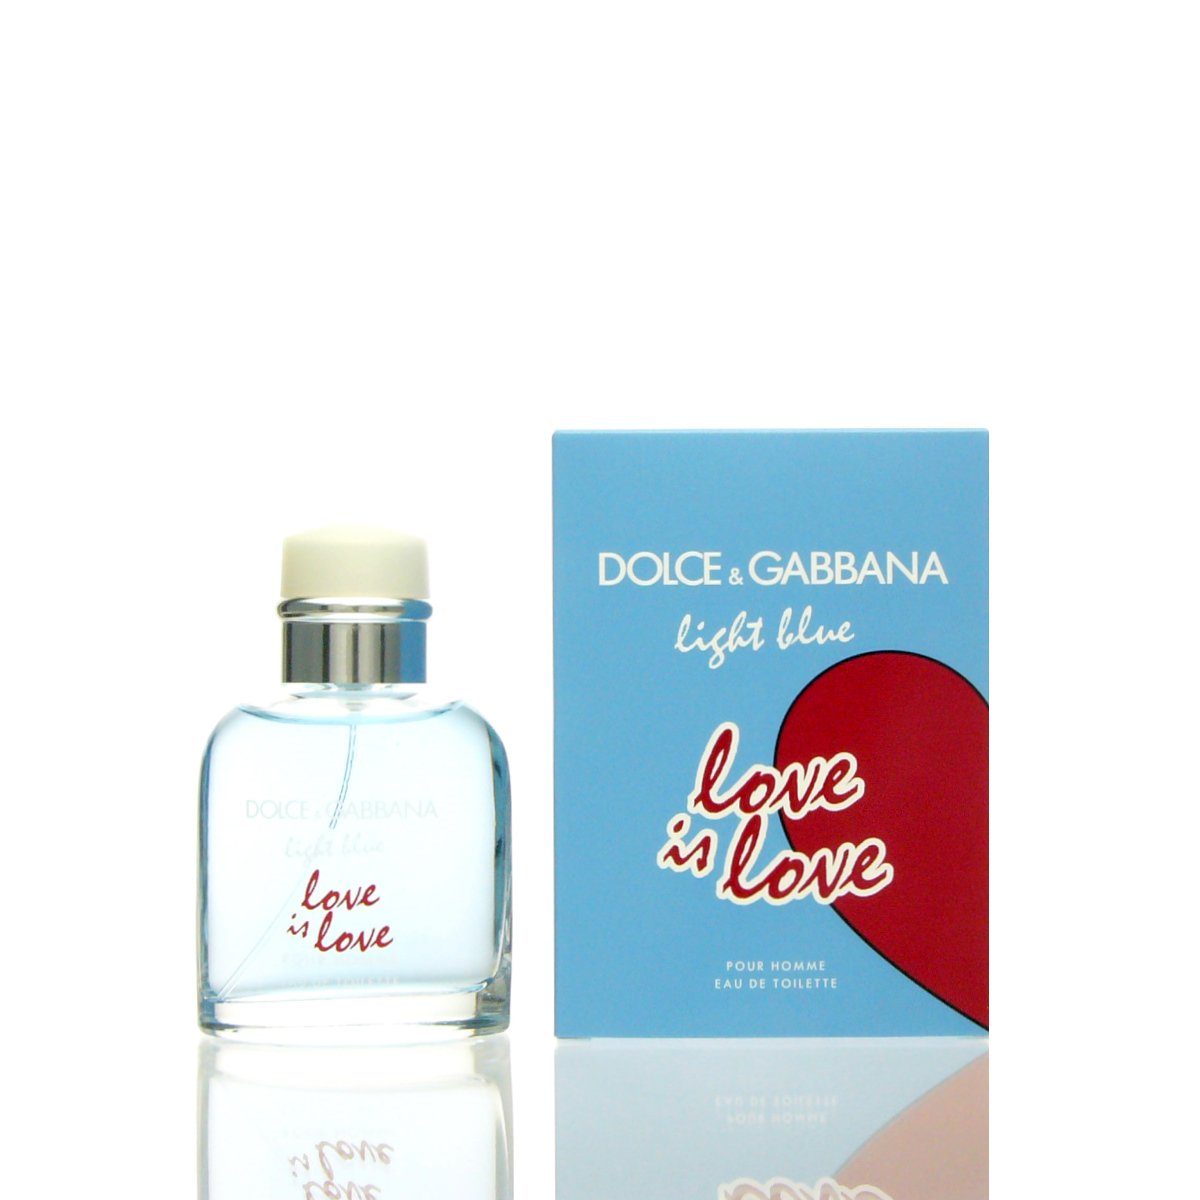 DOLCE & GABBANA Eau de Toilette Dolce & Gabbana D&G Light Blue Love is Love Pour